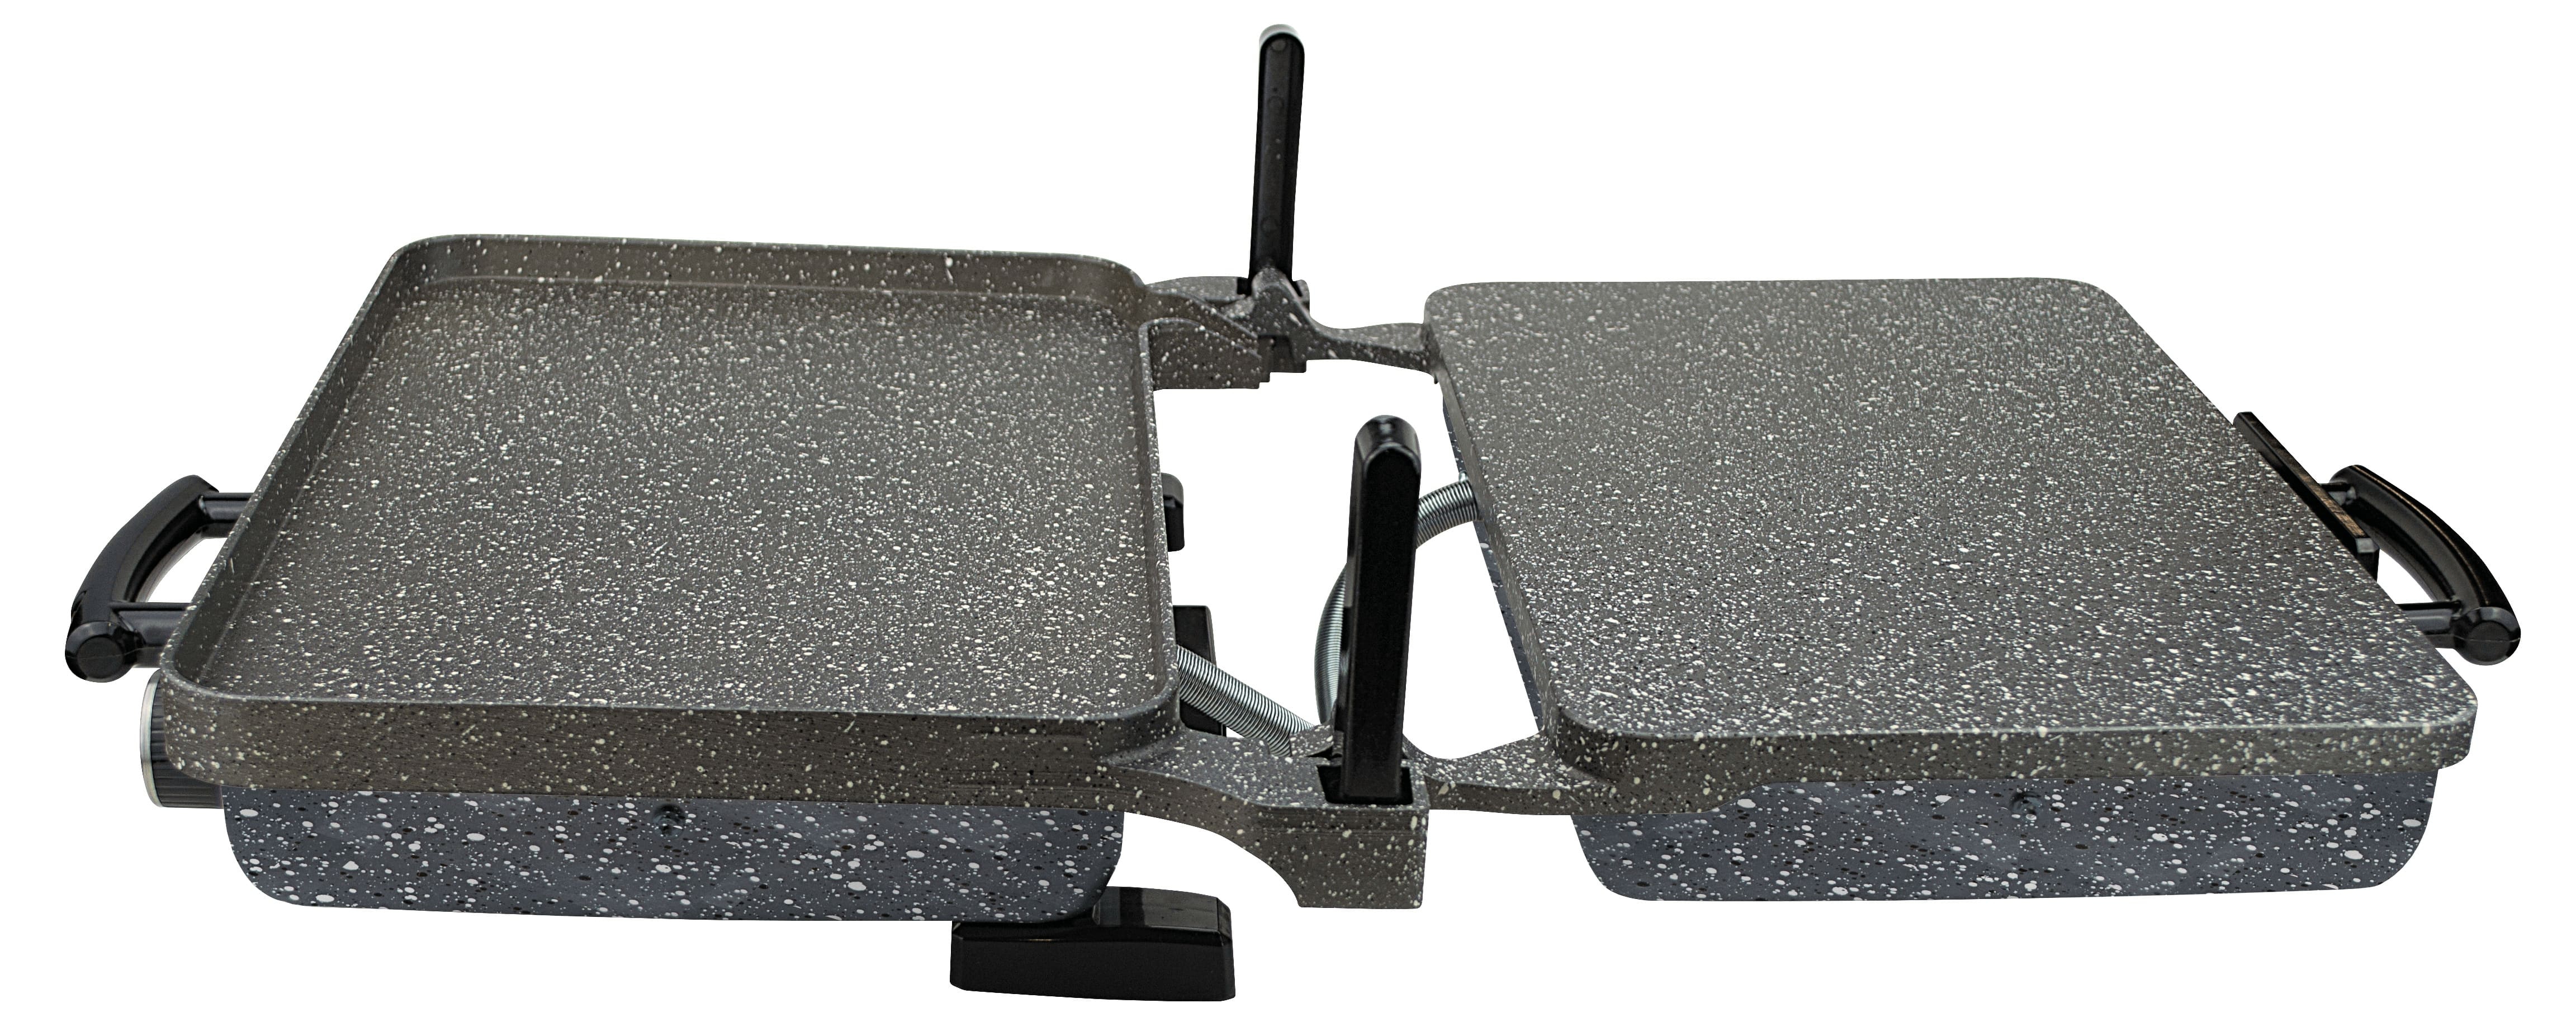 Sermelex JUMBO Granit Grill (ANTRASİT GRİ) - Silex Bazlama ve Lahmacun Makinesi